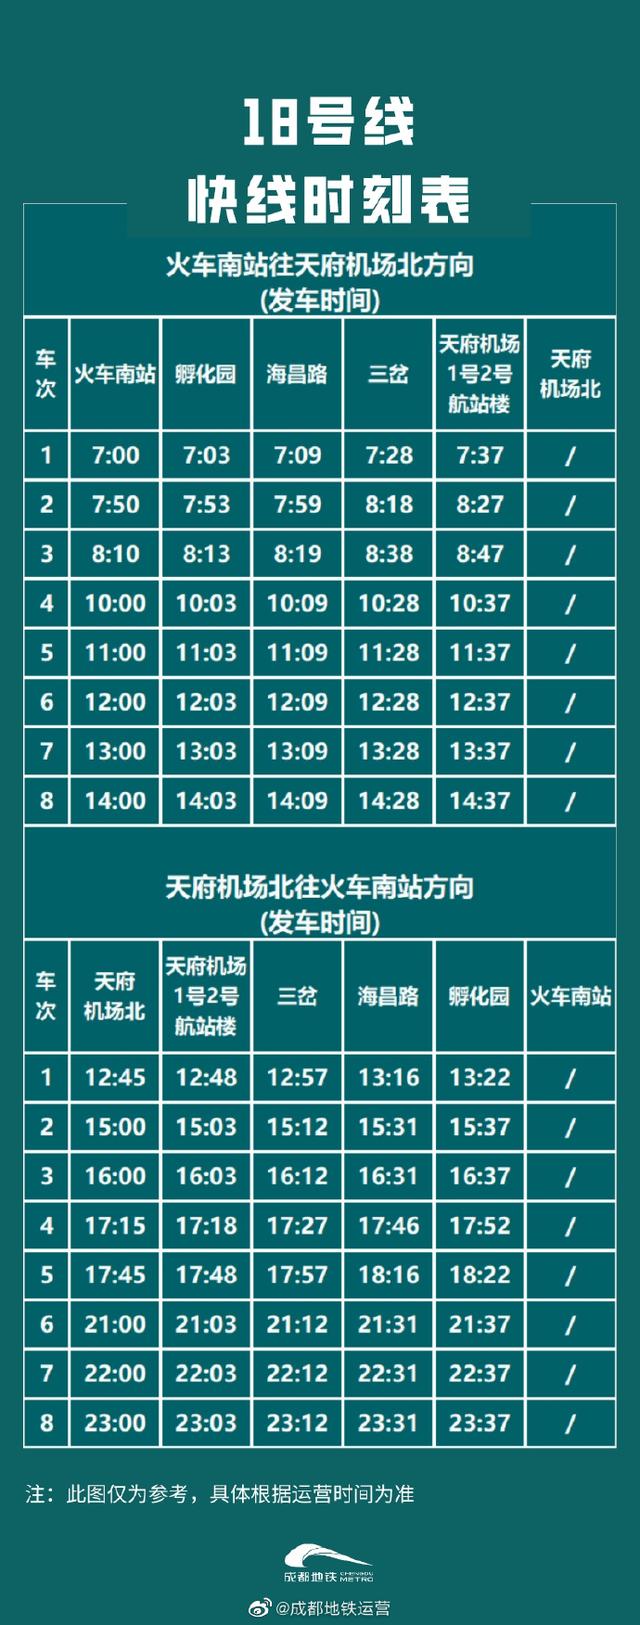 成都地铁18号线全程运行时间,成都地铁18号线运营时刻表(1)